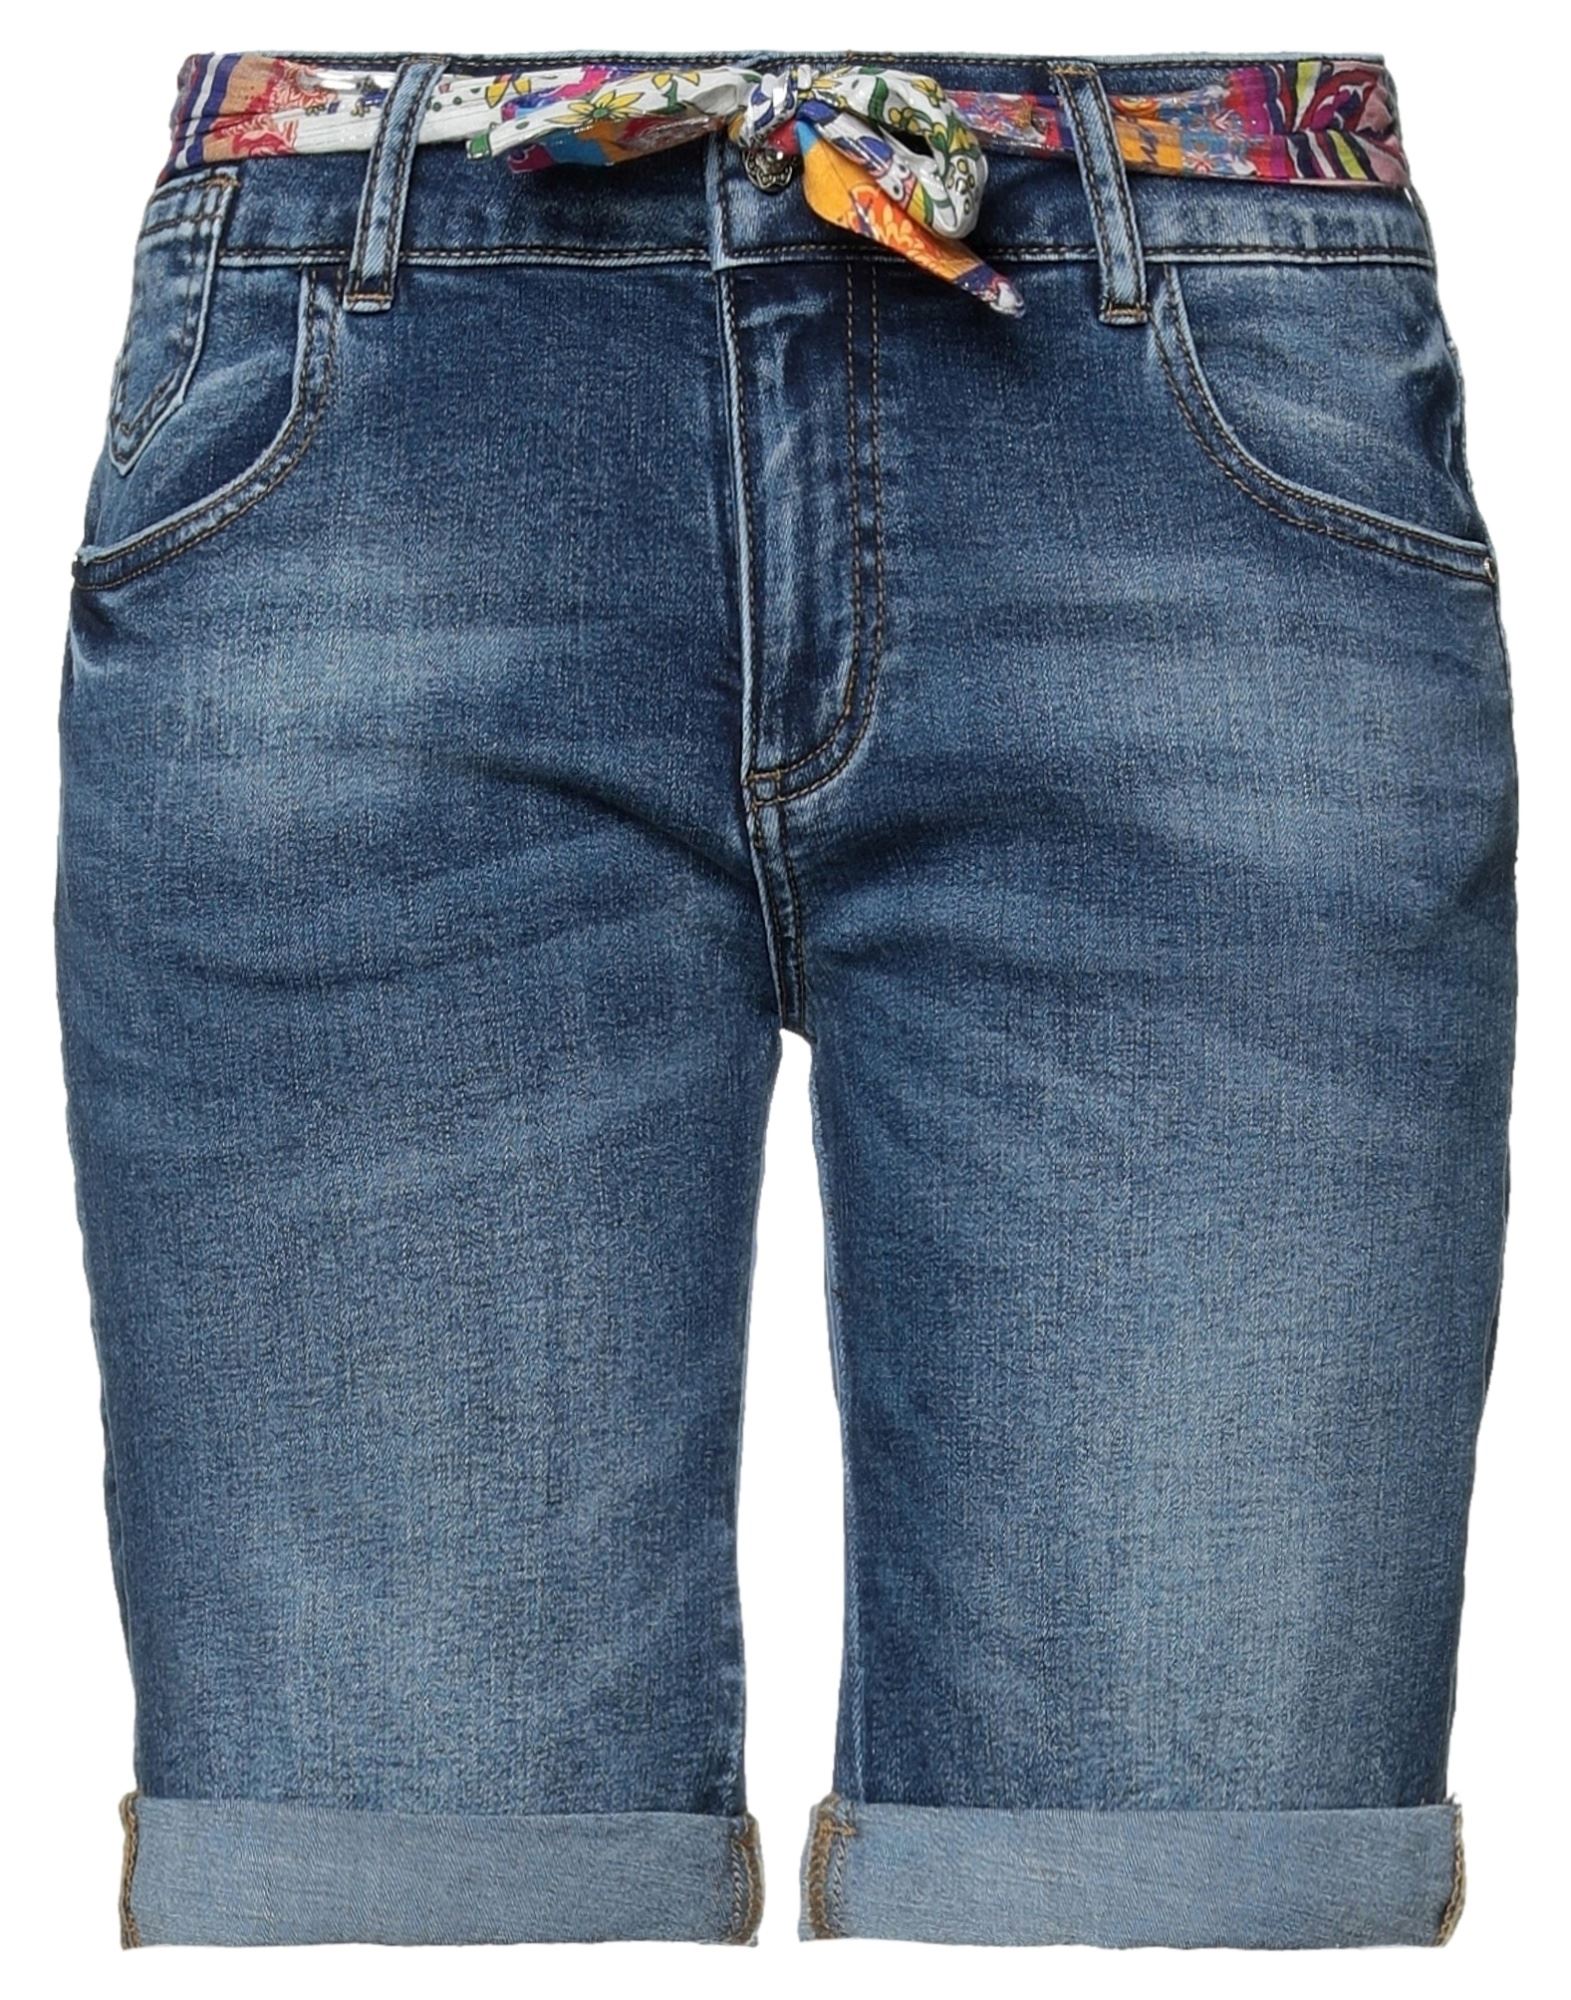 WOMEN FASHION Jeans Shorts jeans Print Desigual shorts jeans Blue 31                  EU discount 68% 